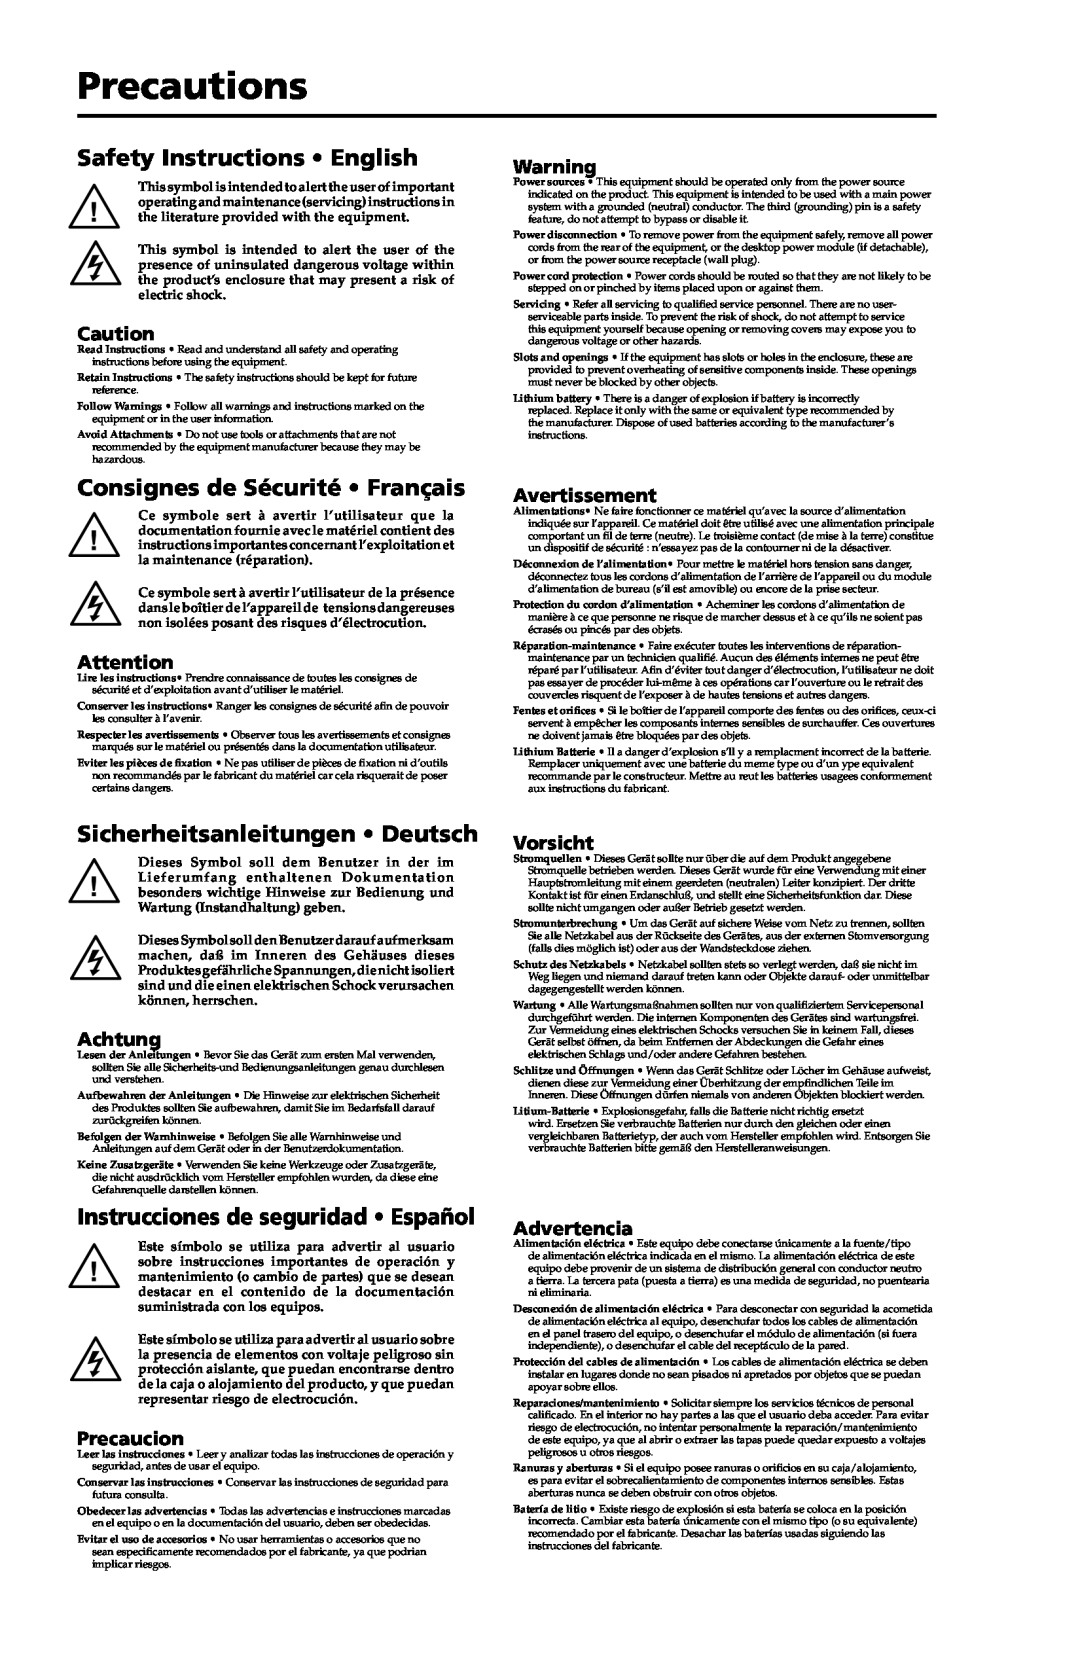 Extron electronic IN3254 Precautions, Safety Instructions English, Consignes de Sécurité Français, Avertissement, Achtung 